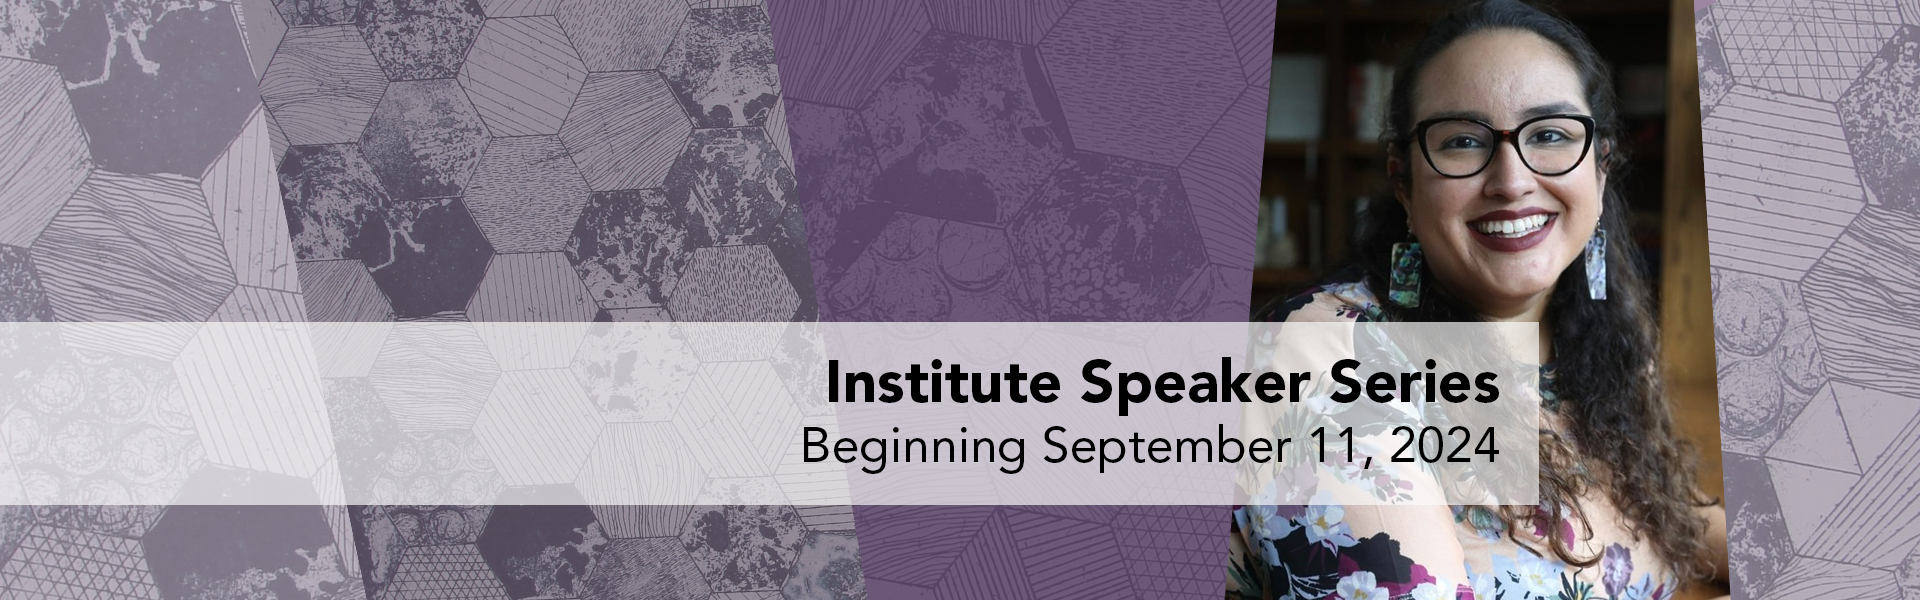 Institute Speaker Series - Beginning September 11, 2024